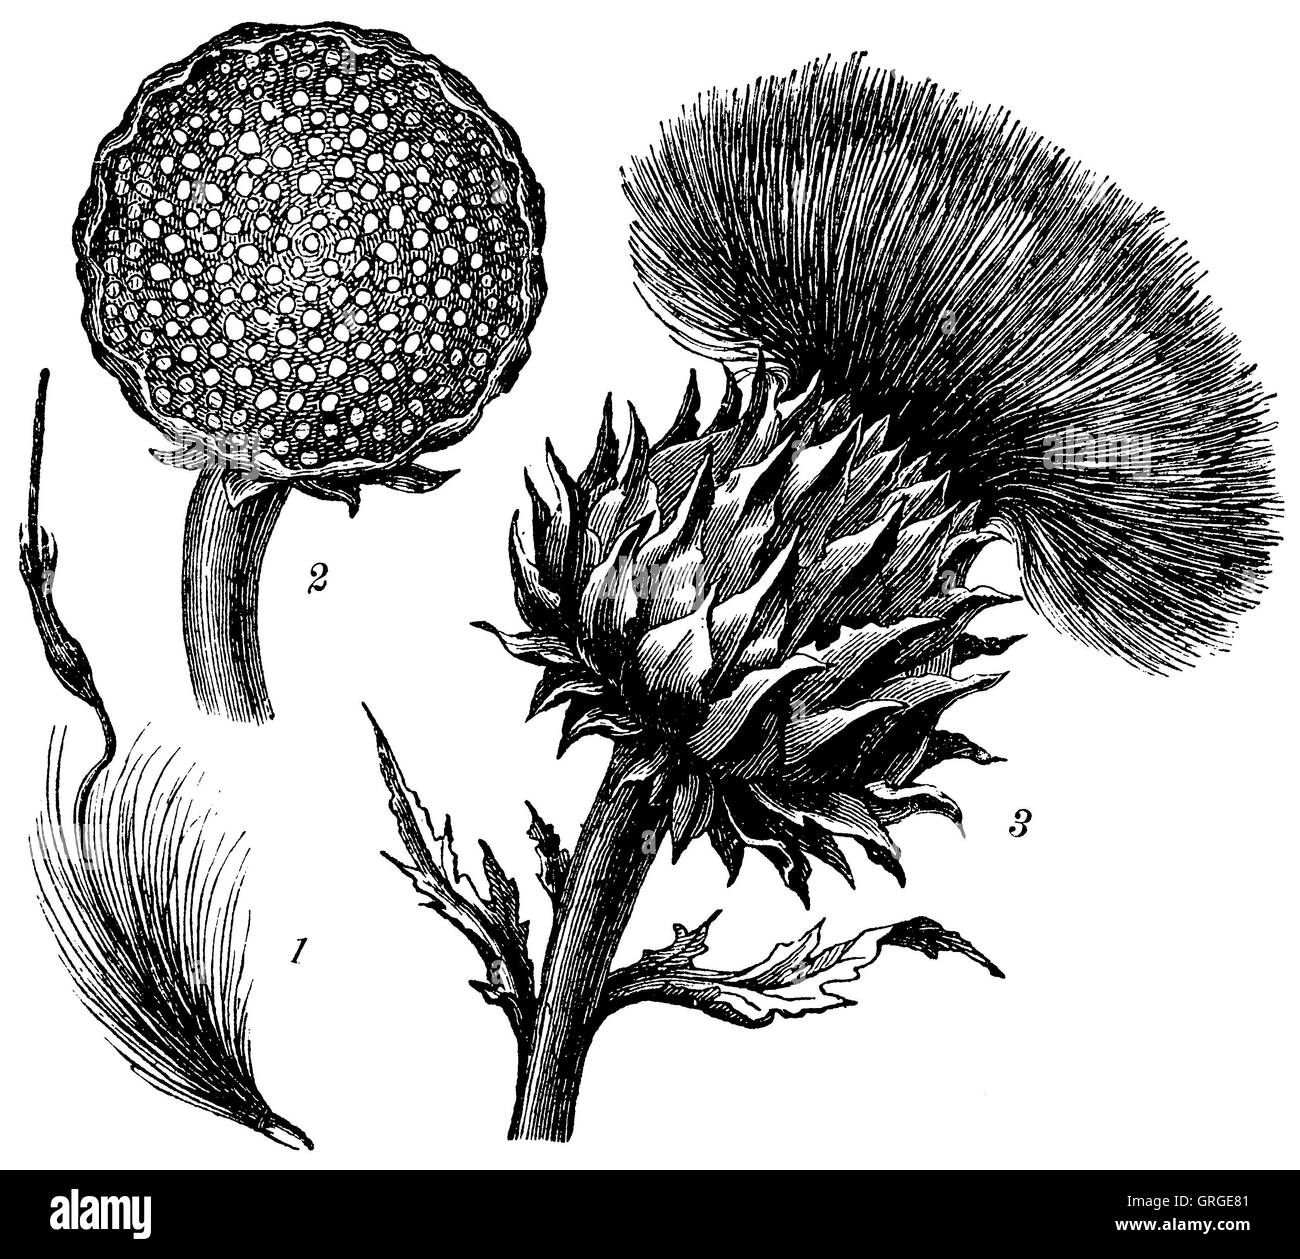 Artichoke: 1) flower head, 2) ovary, 3) single flower Artischoke Stock Photo